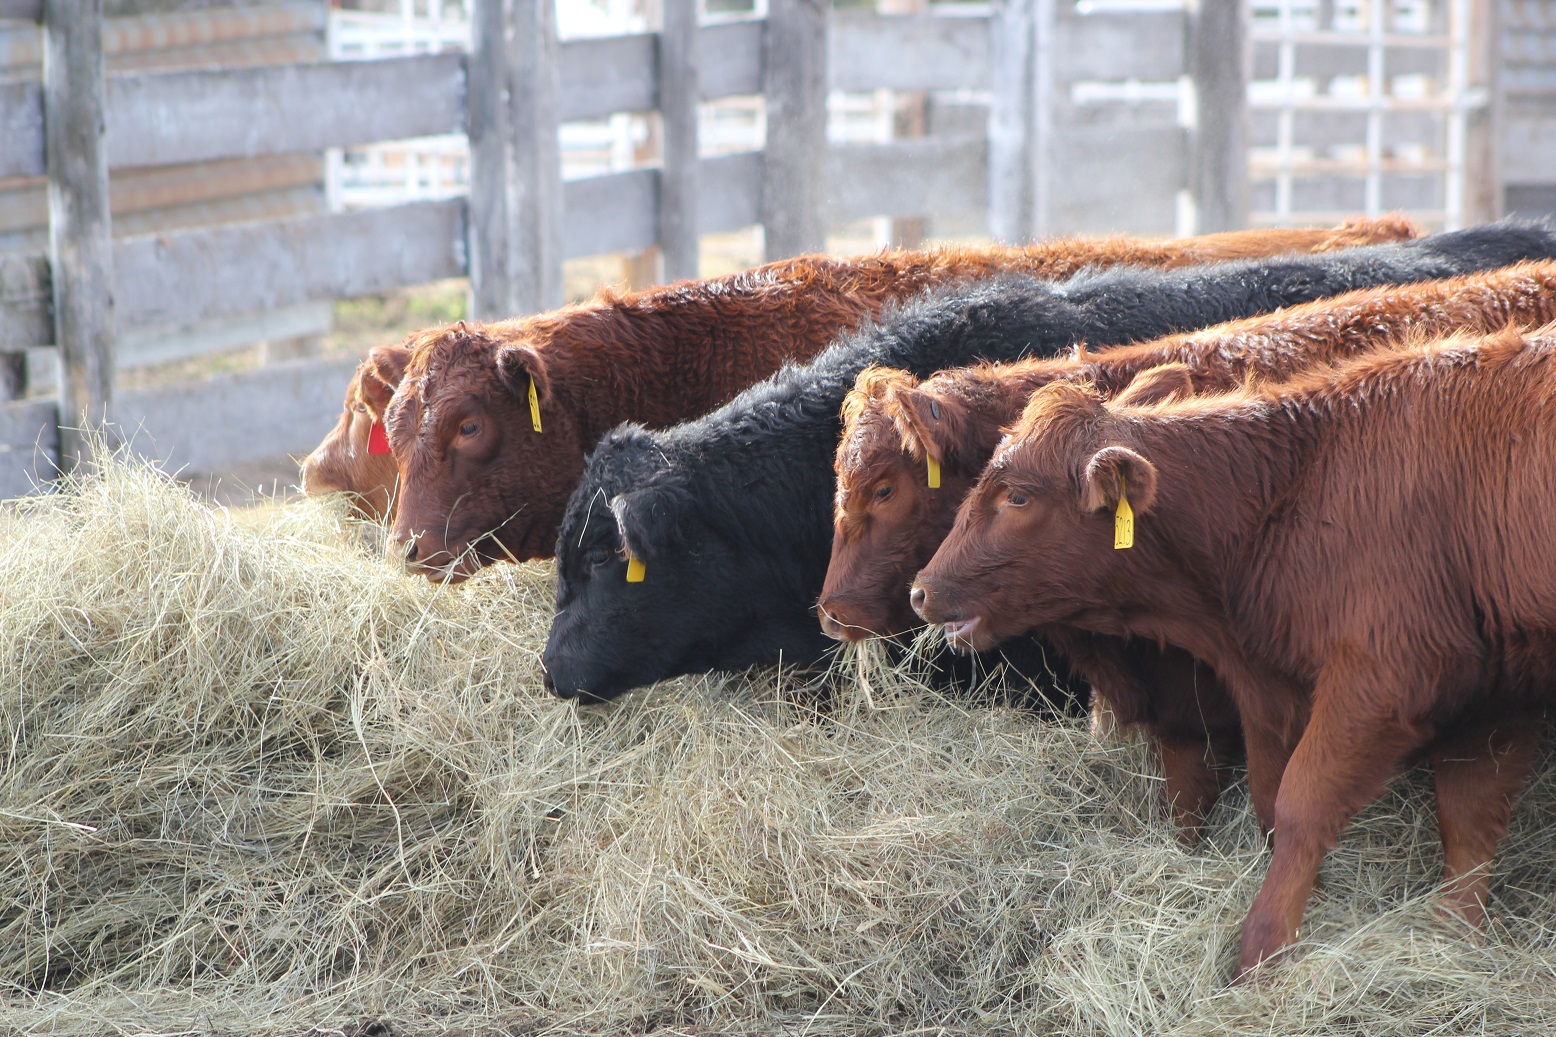 IMG_0965 Walz weaned calves hay.jpg